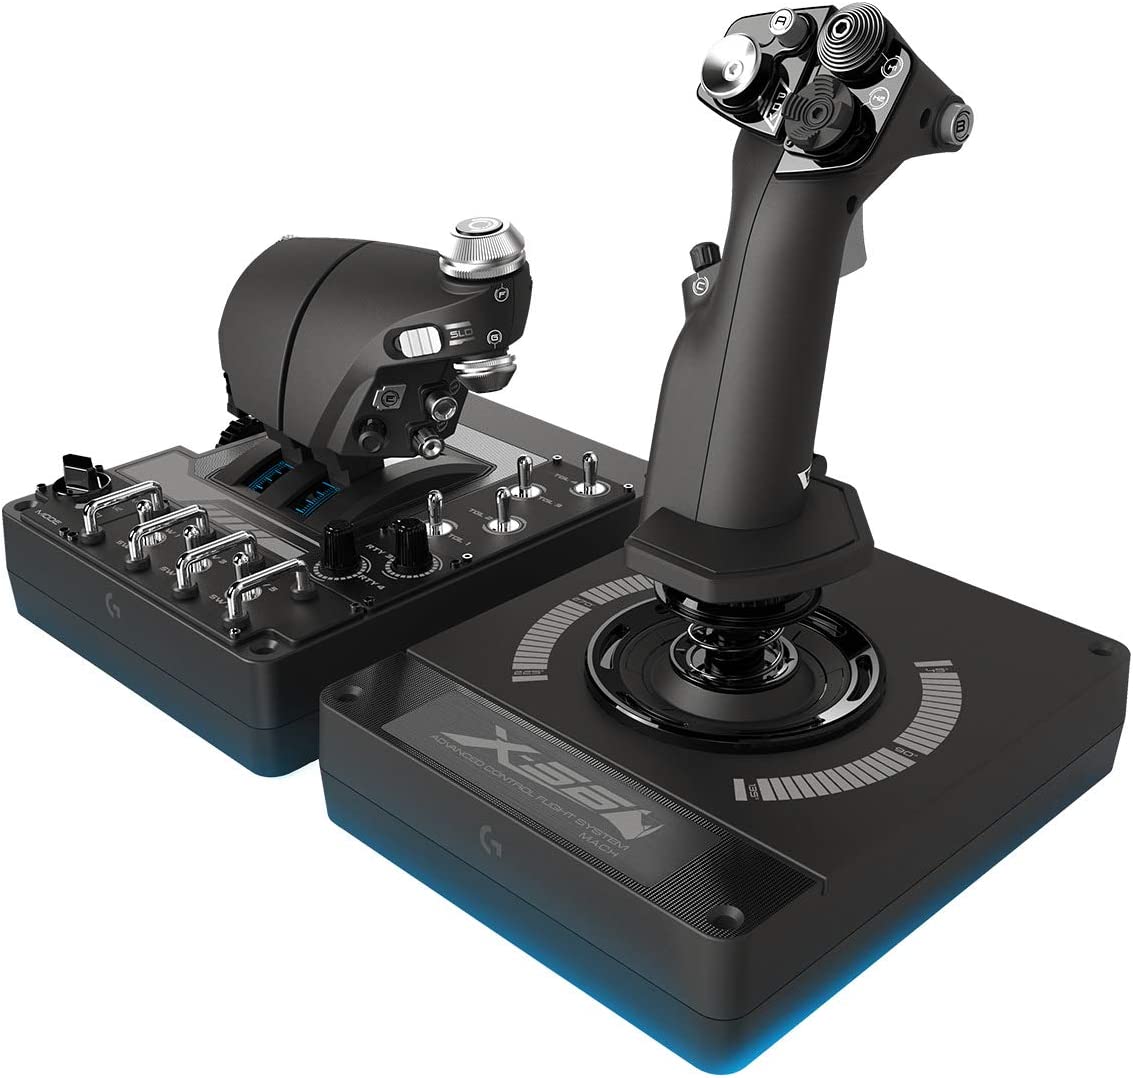 Les 9 meilleurs joystick pour la simulation de vol sur PC - GTX Gamer